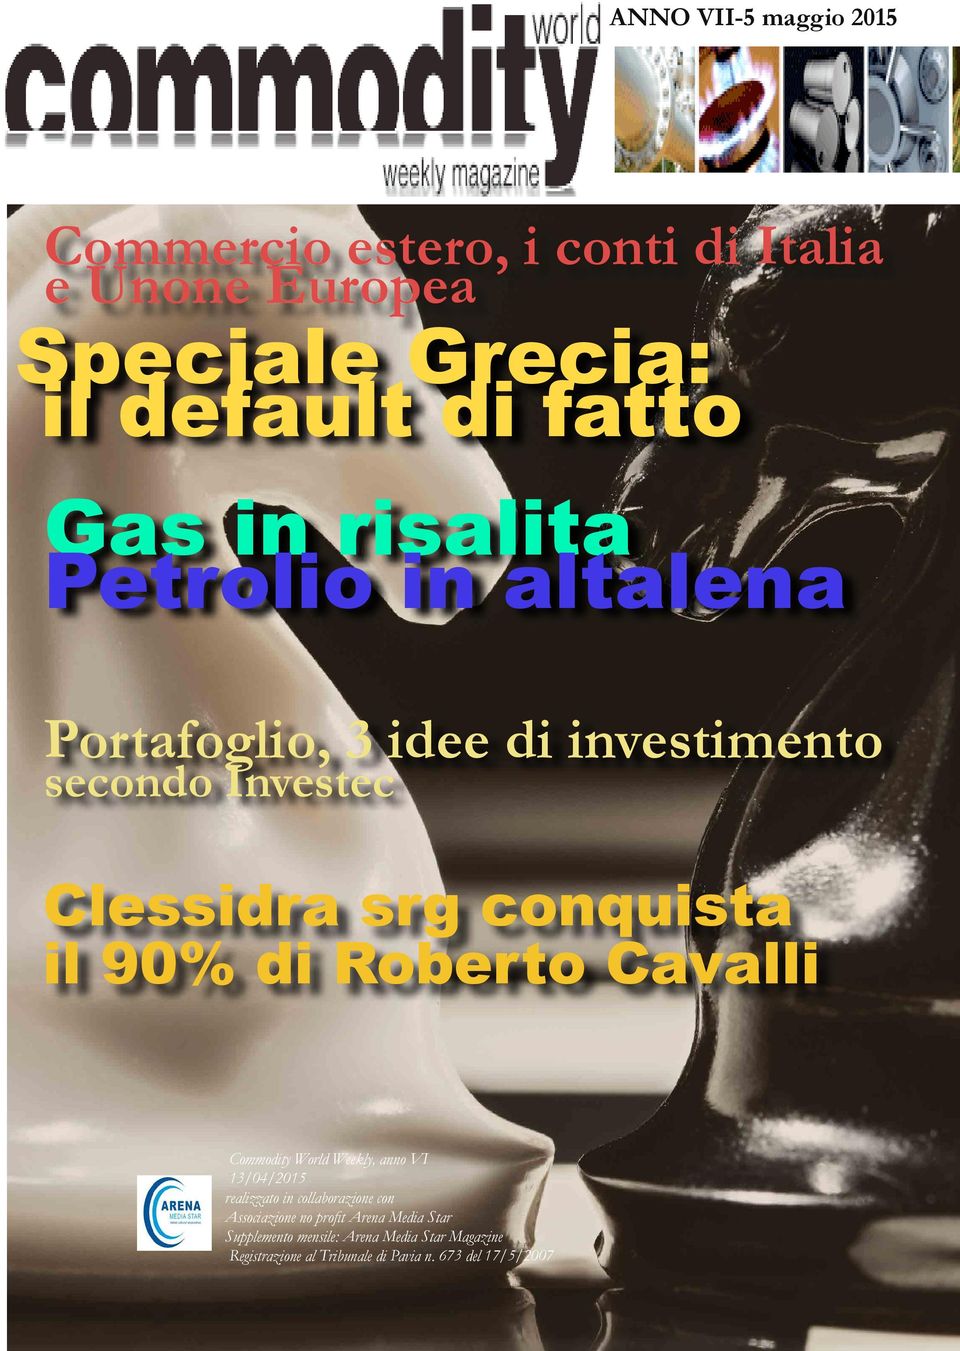 di Roberto Cavalli Commodity World Weekly, anno VI 13/04/2015 realizzato in collaborazione con Associazione no profit